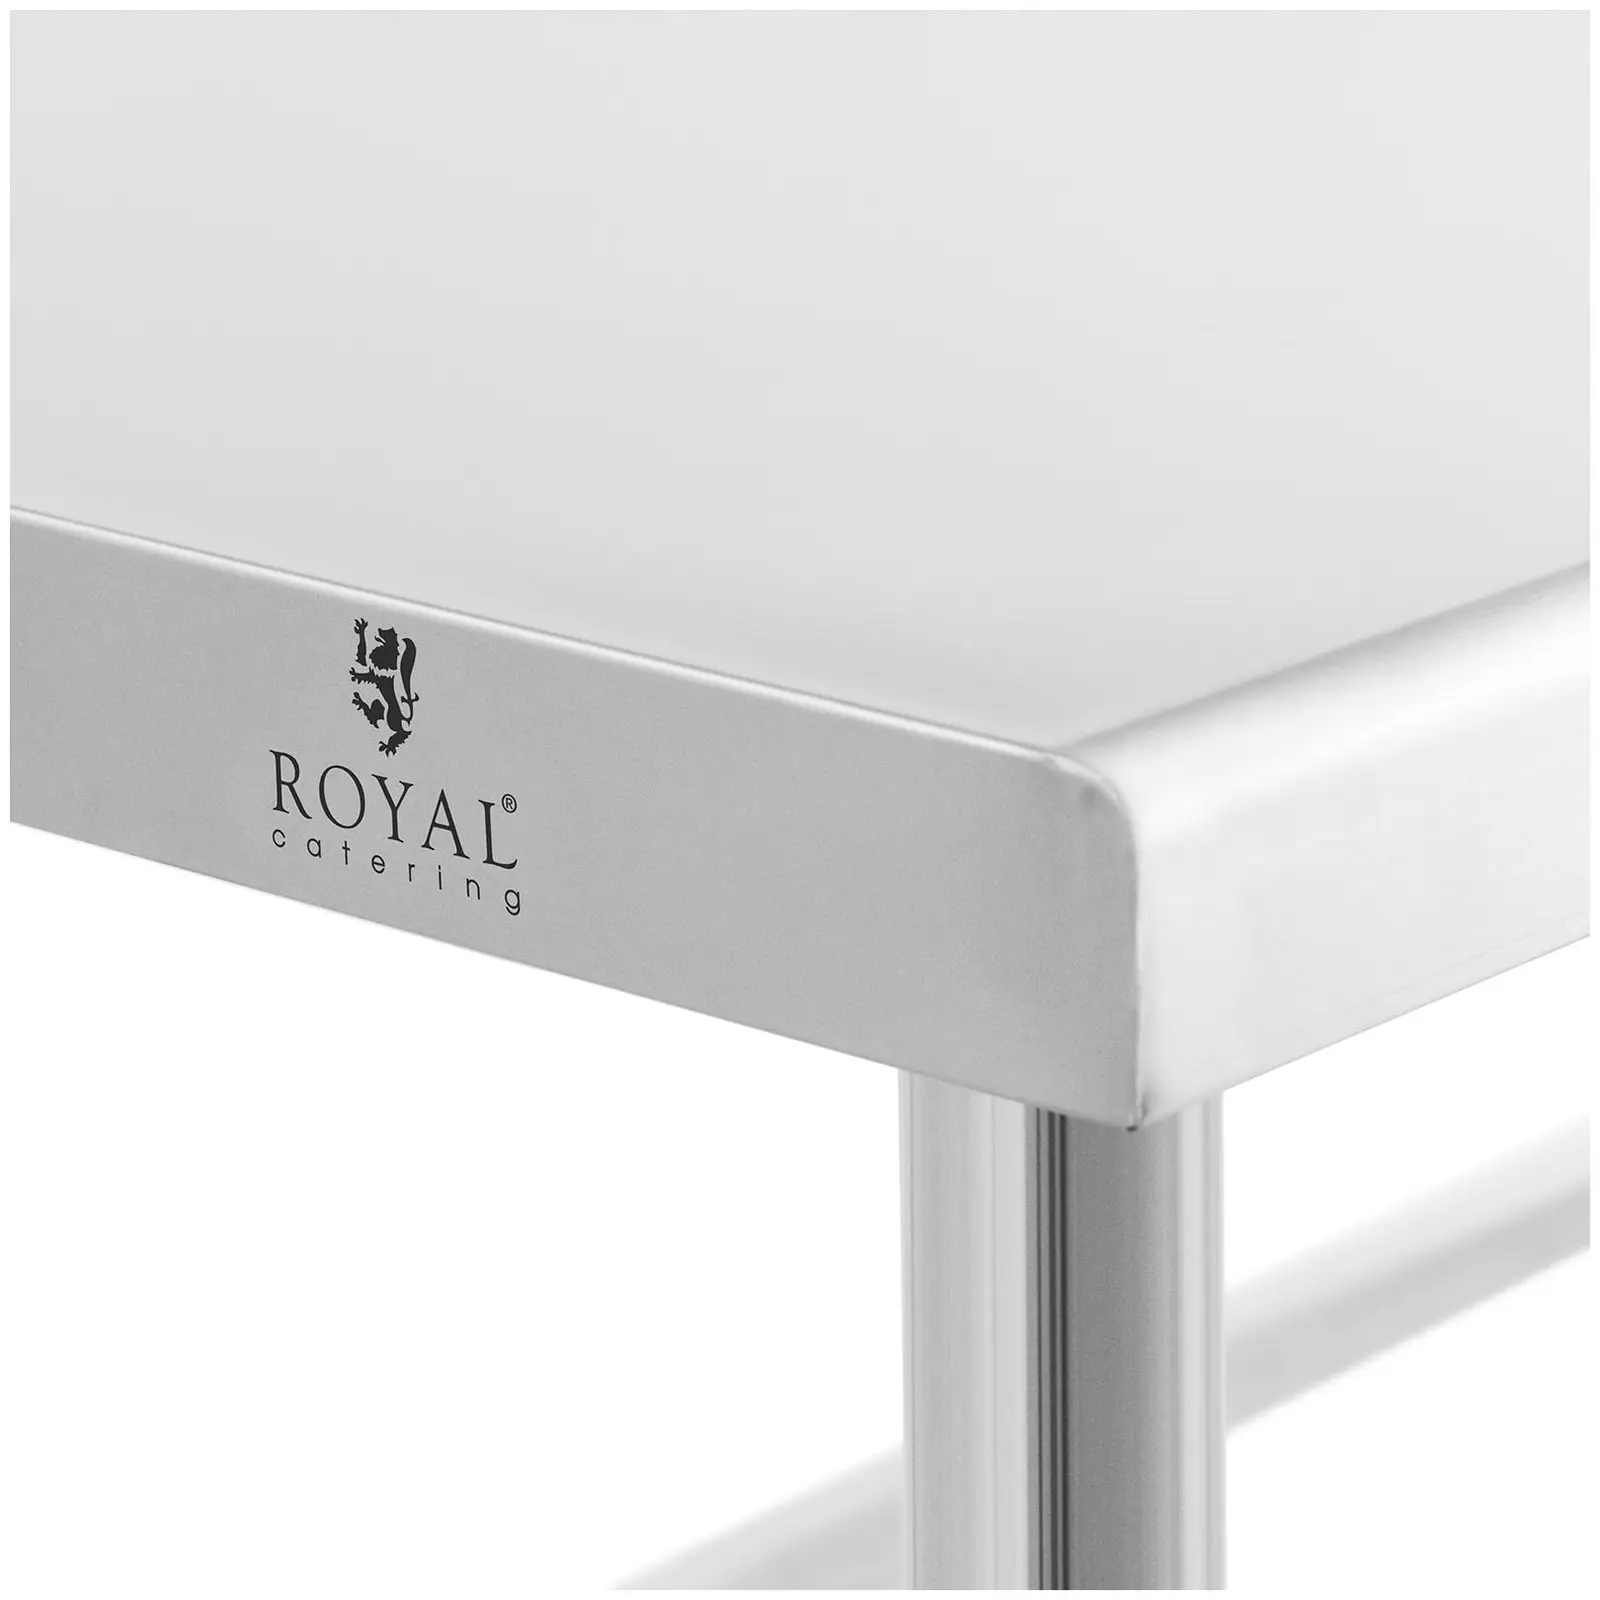 Pracovní stůl z ušlechtilé oceli - 180 x 70 cm - lem - nosnost 96 kg - Royal Catering